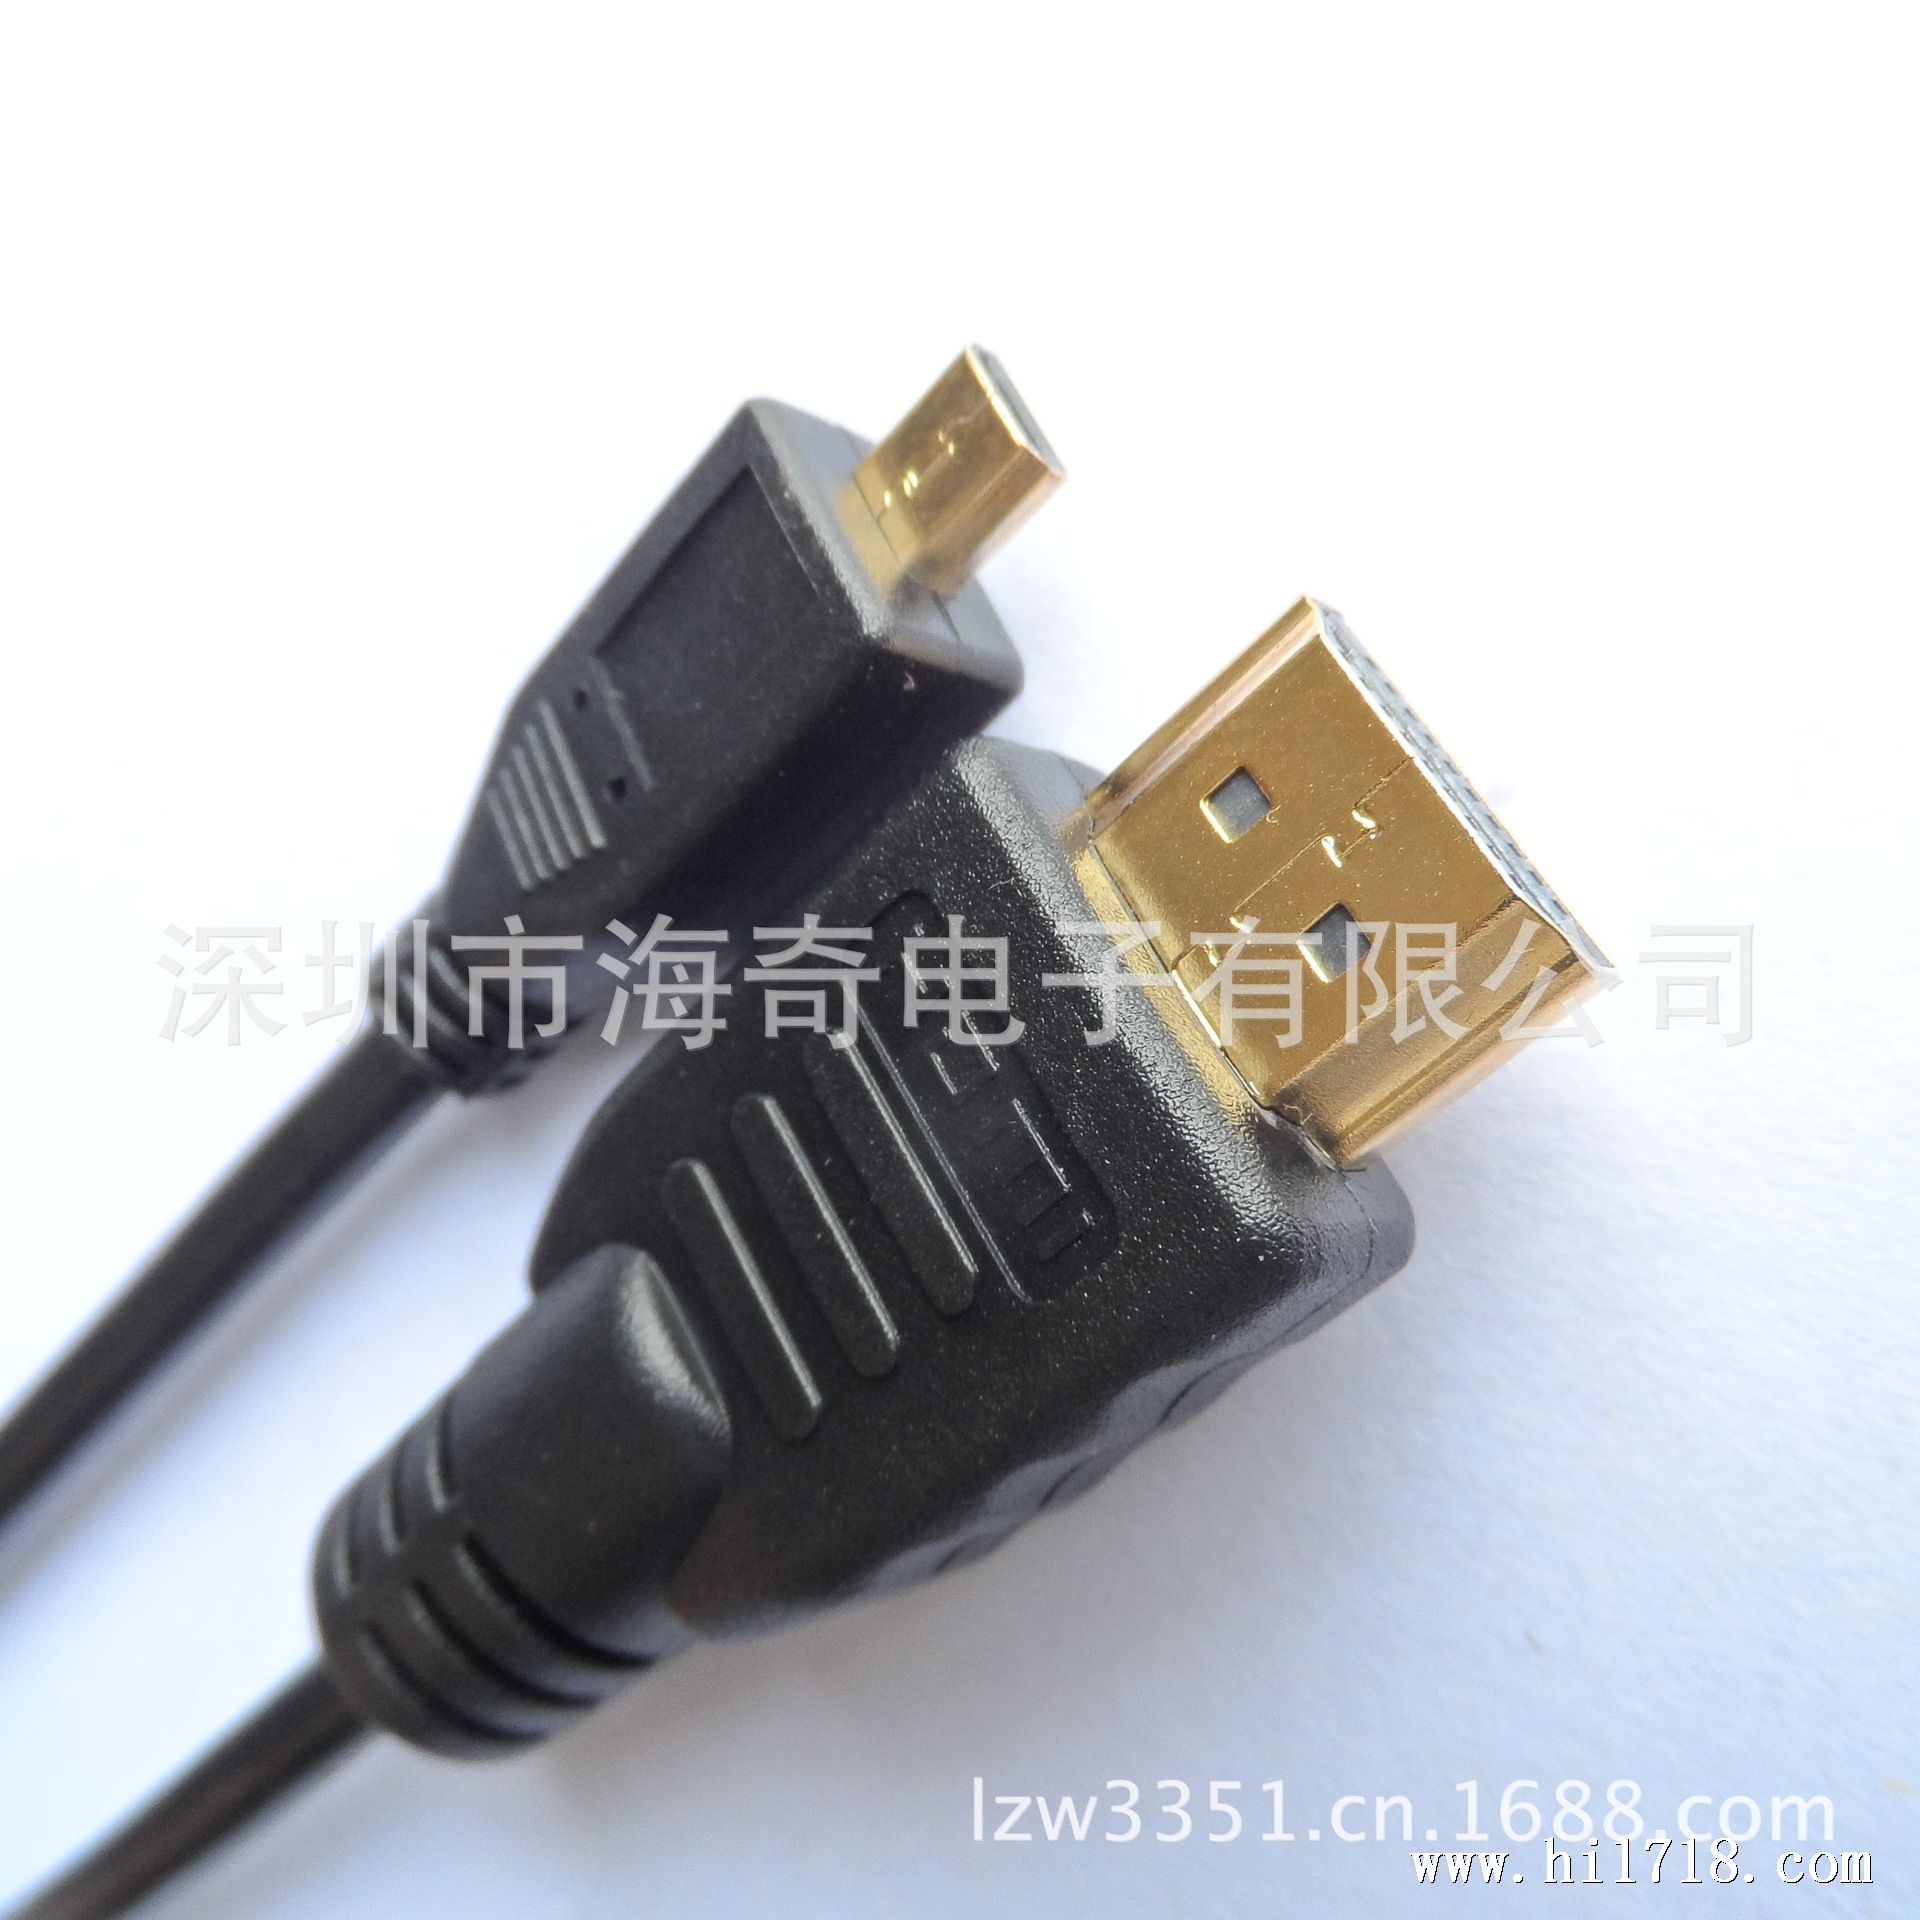 迈克HDMI手机电视连接线 micro hdmi to hdmi高